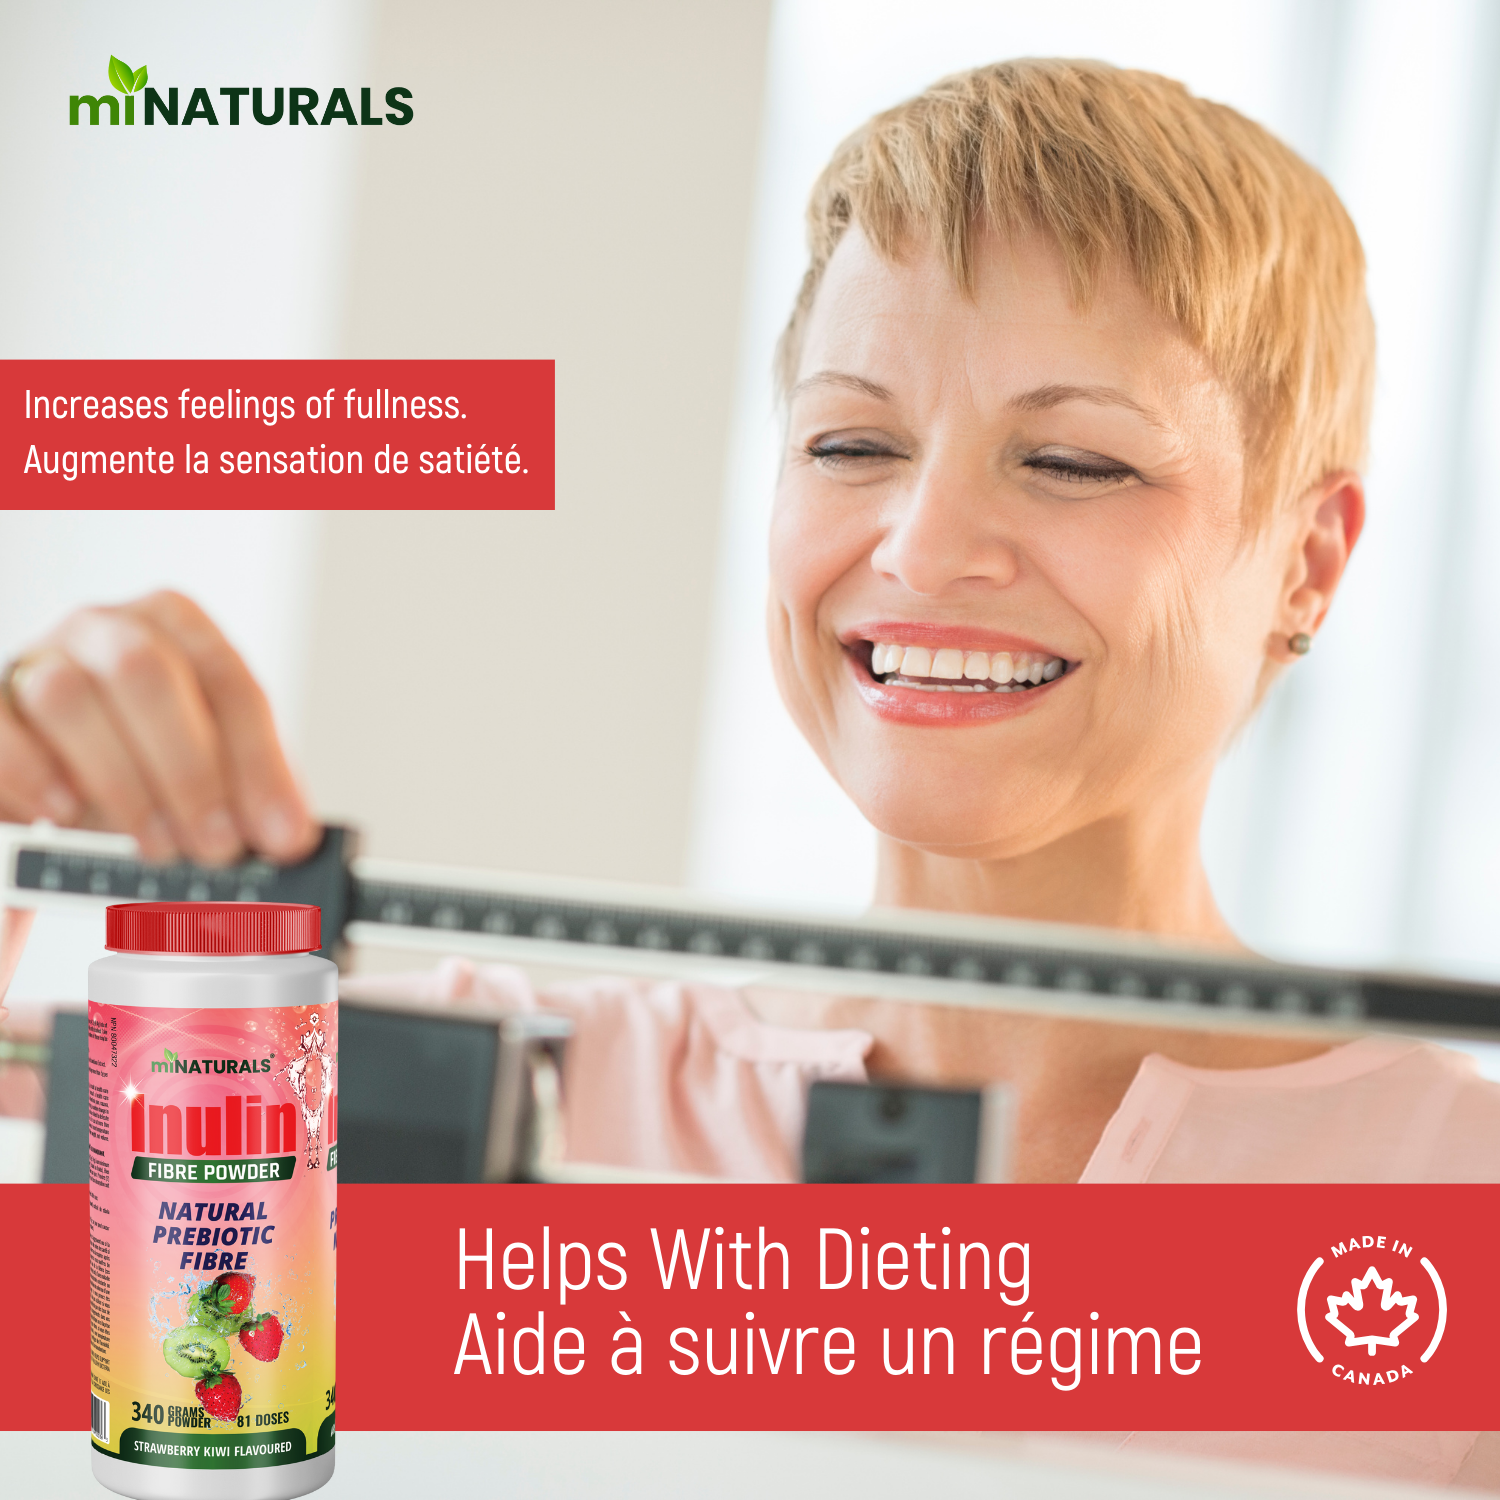 Pure Inulin Fiber Powder - Natural Prebiotic Fibre Supplement (340g - 106 Doses) - Strawberry/Kiwi Flavoured